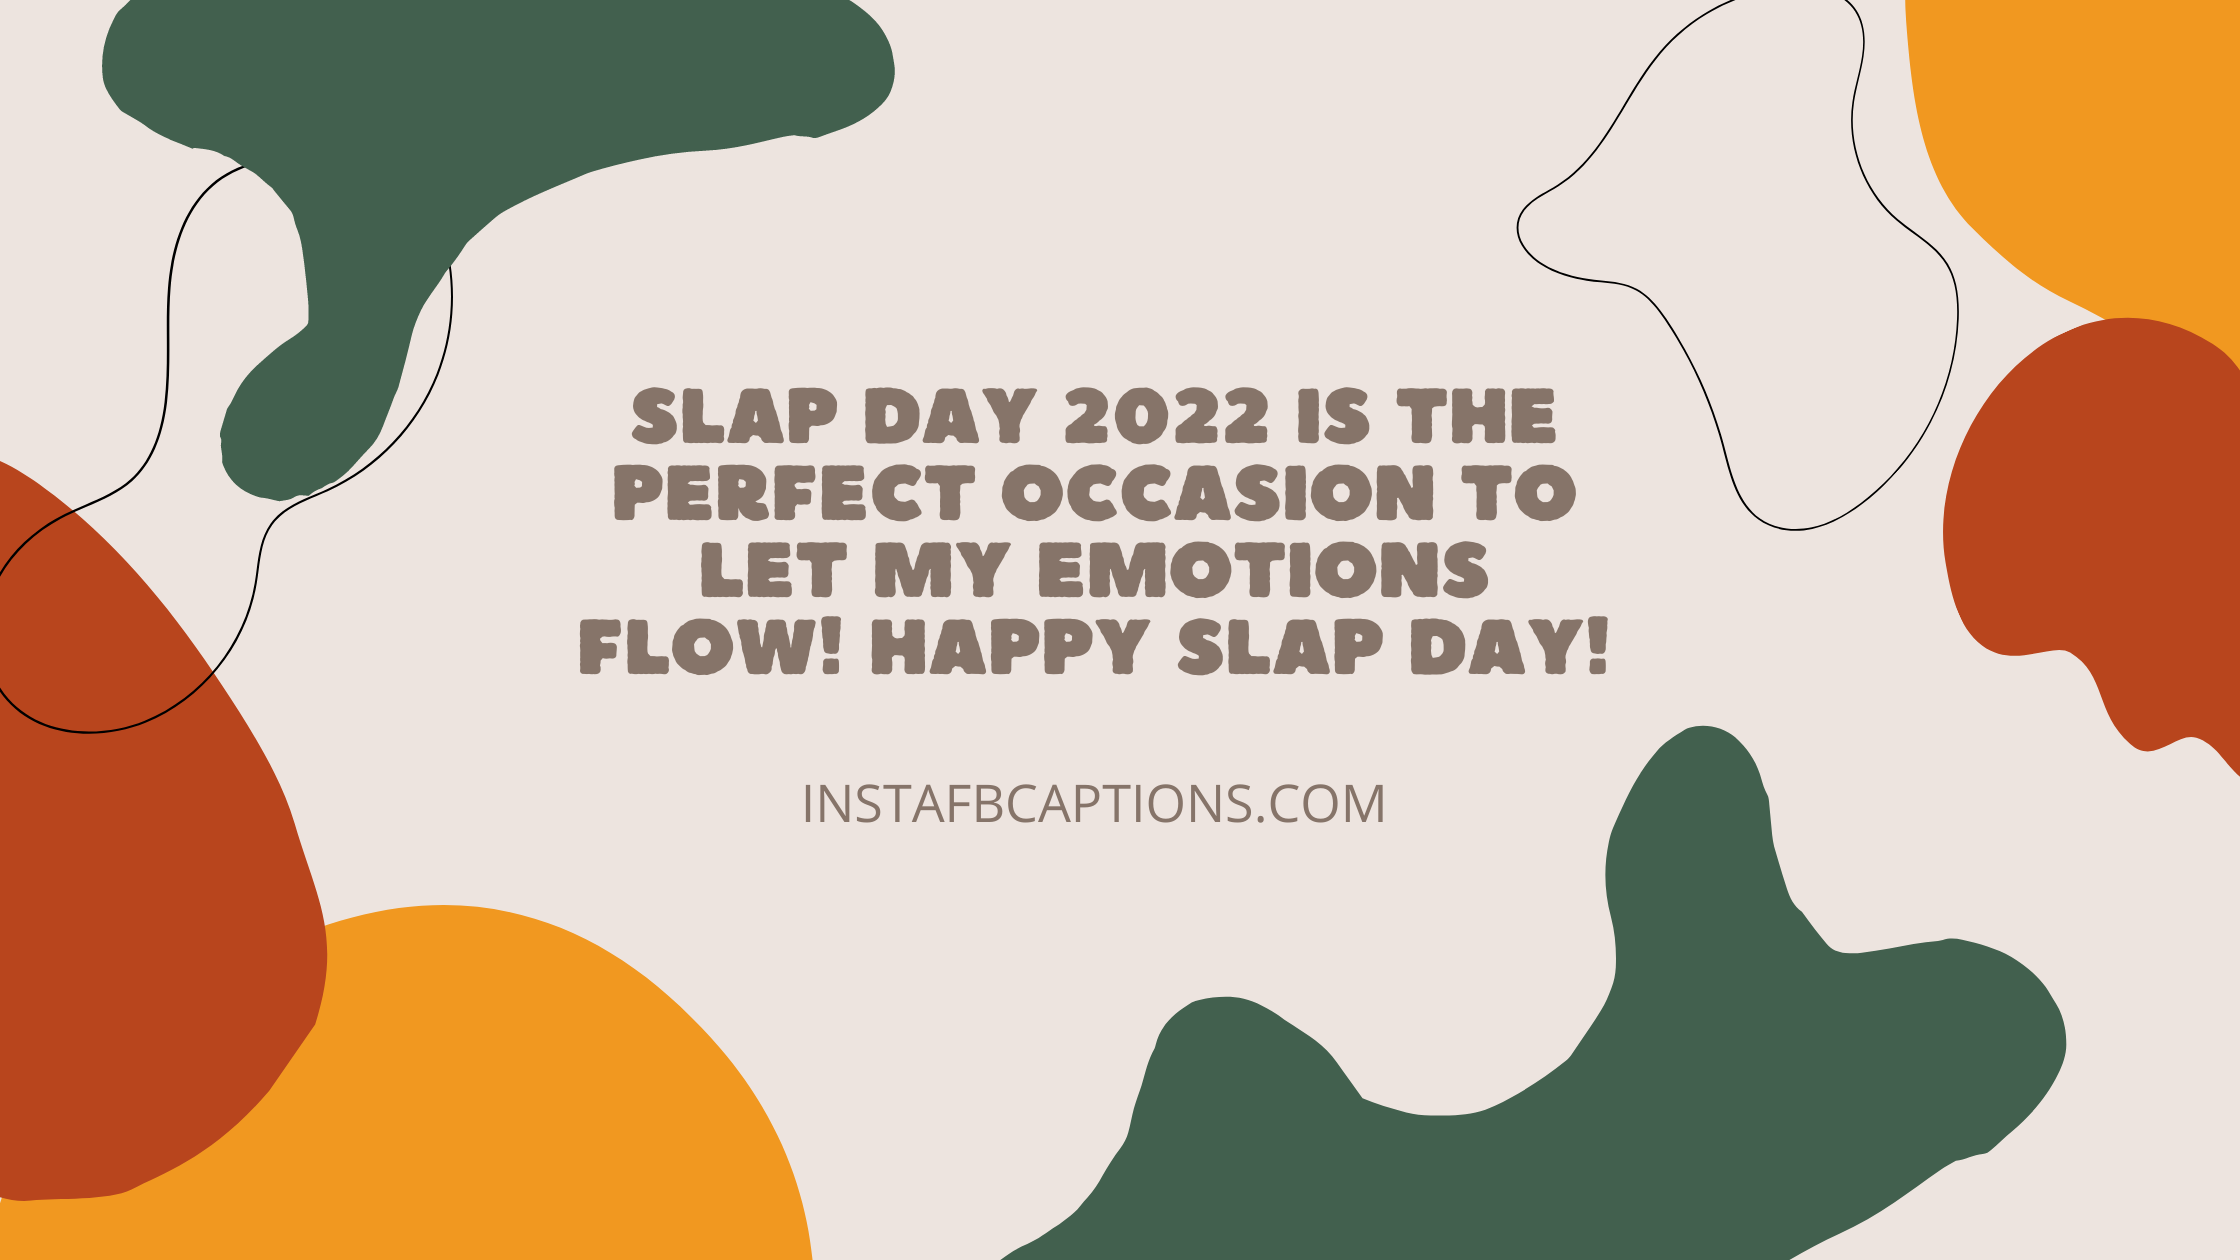 Instagram Captions For Slap Day 2022  - Instagram Captions for Slap Day 2022 - Happy Slap Day Instagram Captions for 15 Feb in 2023